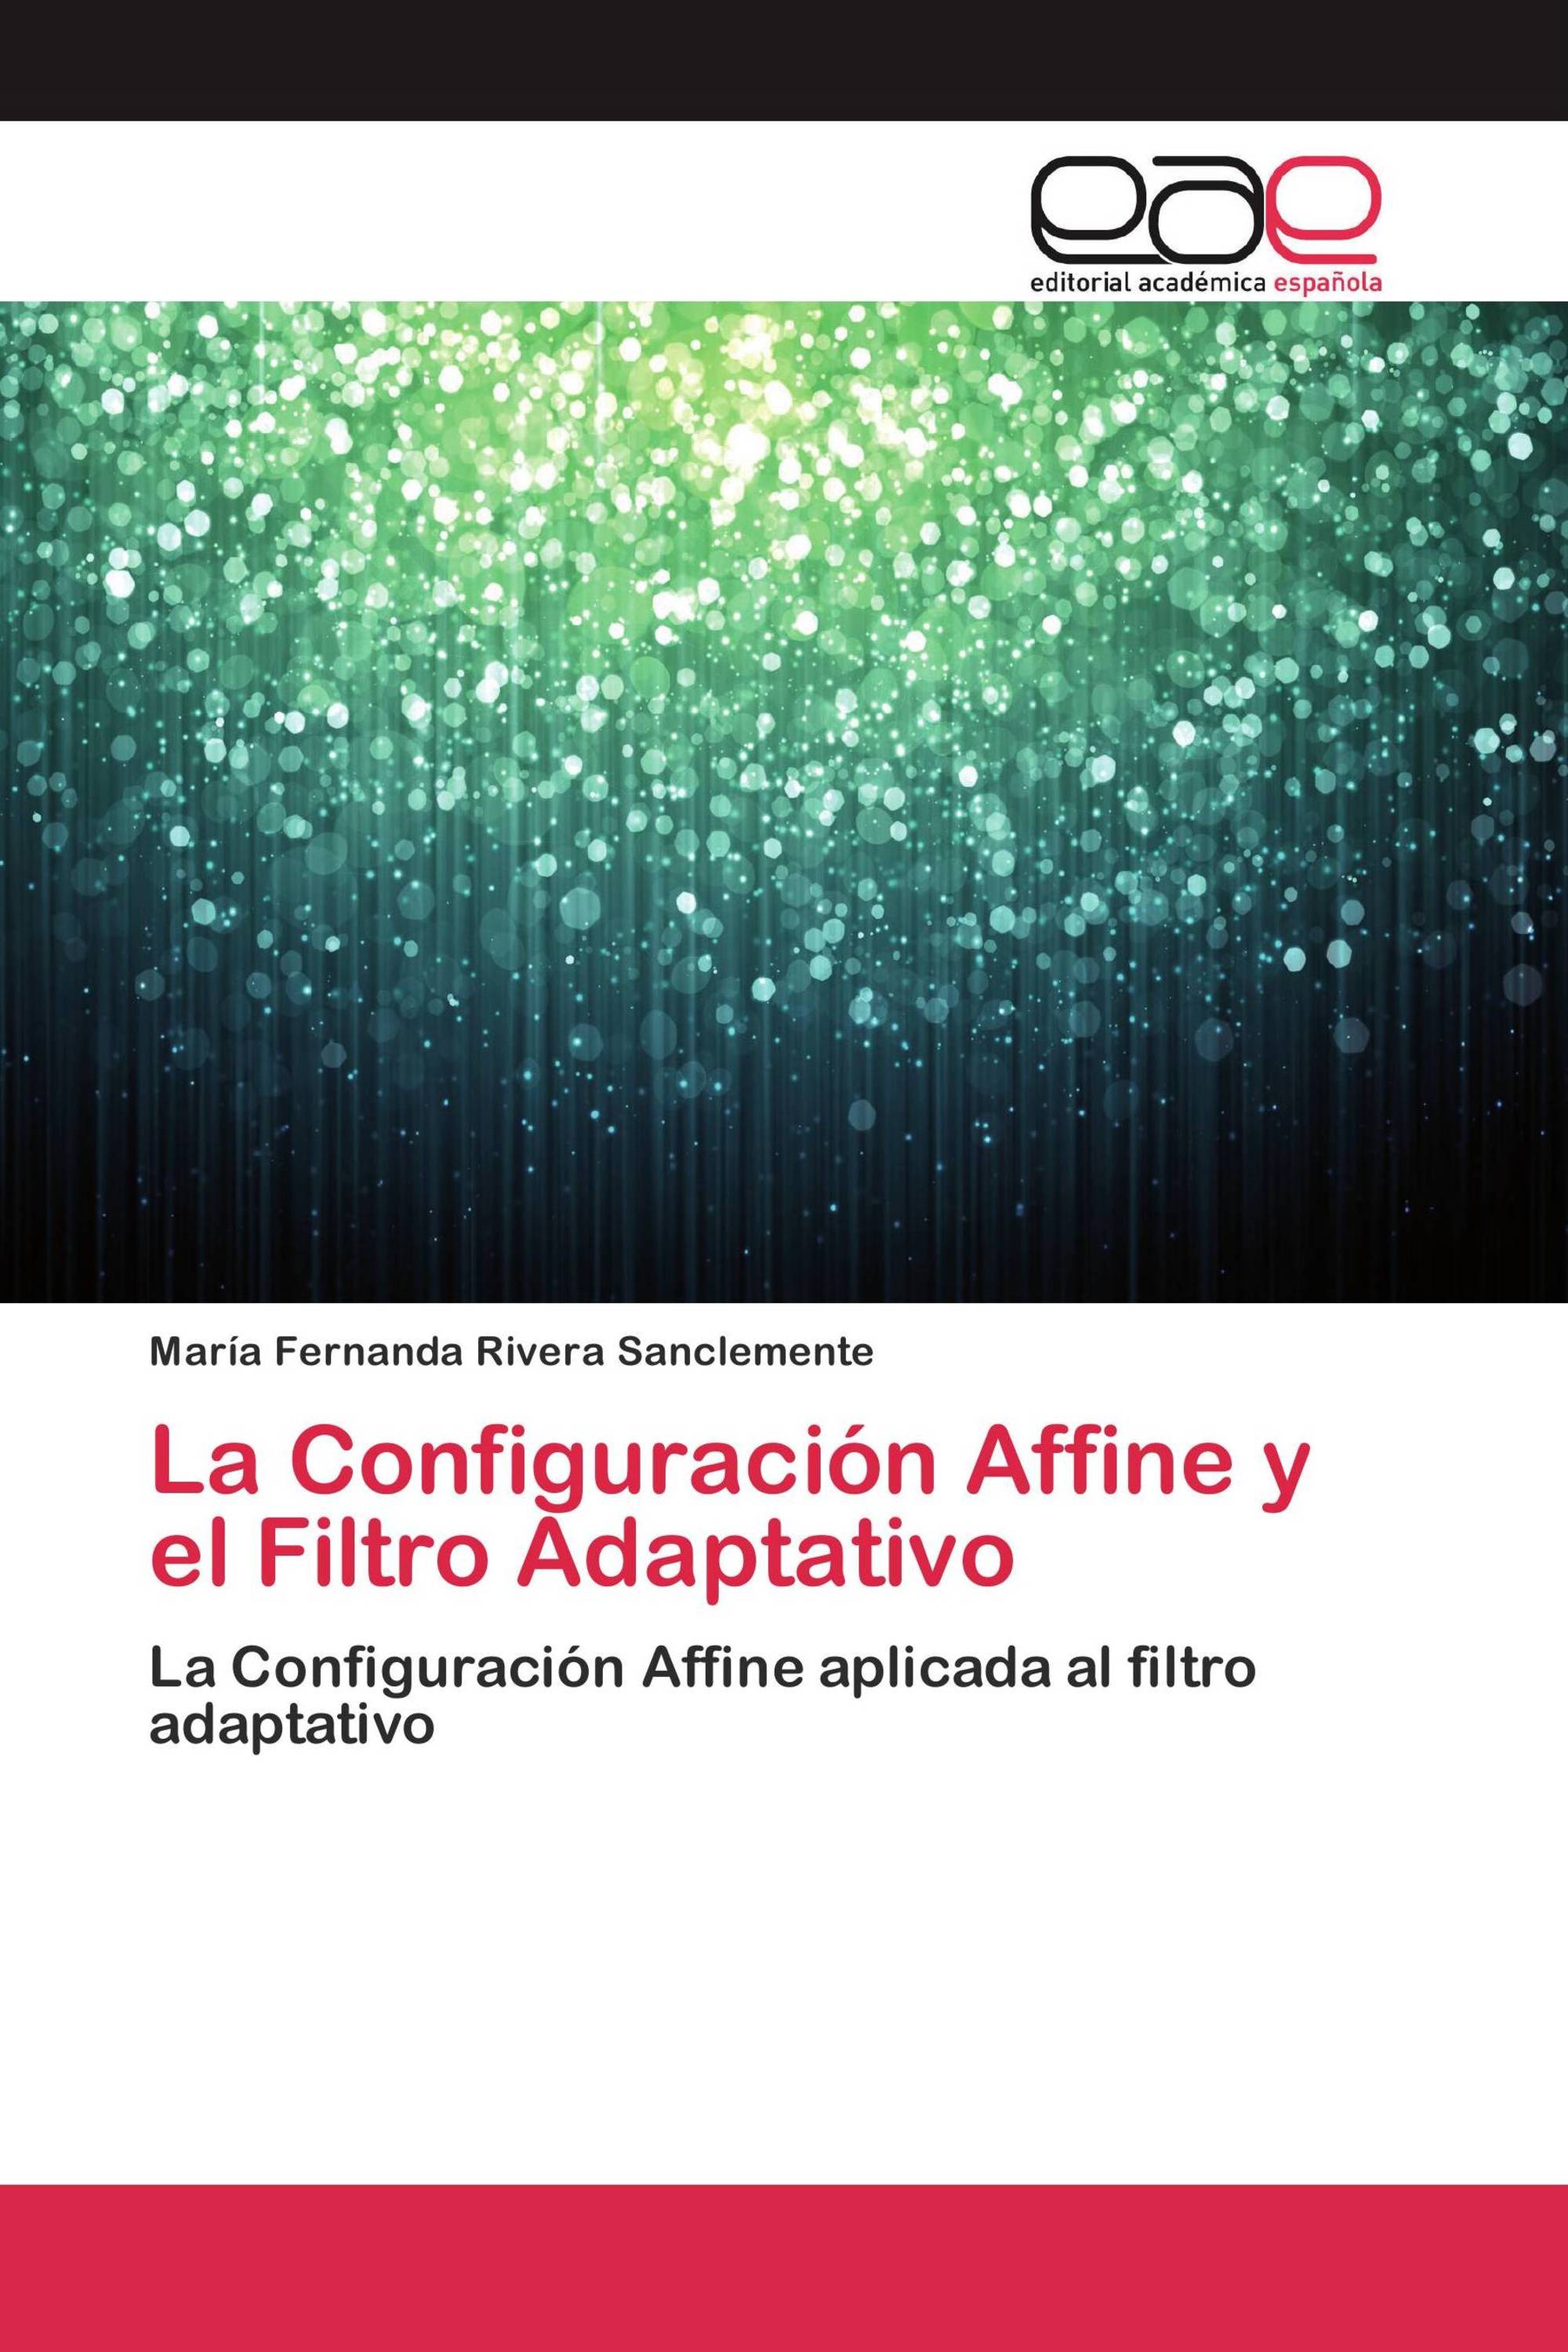 La Configuración Affine y el Filtro Adaptativo